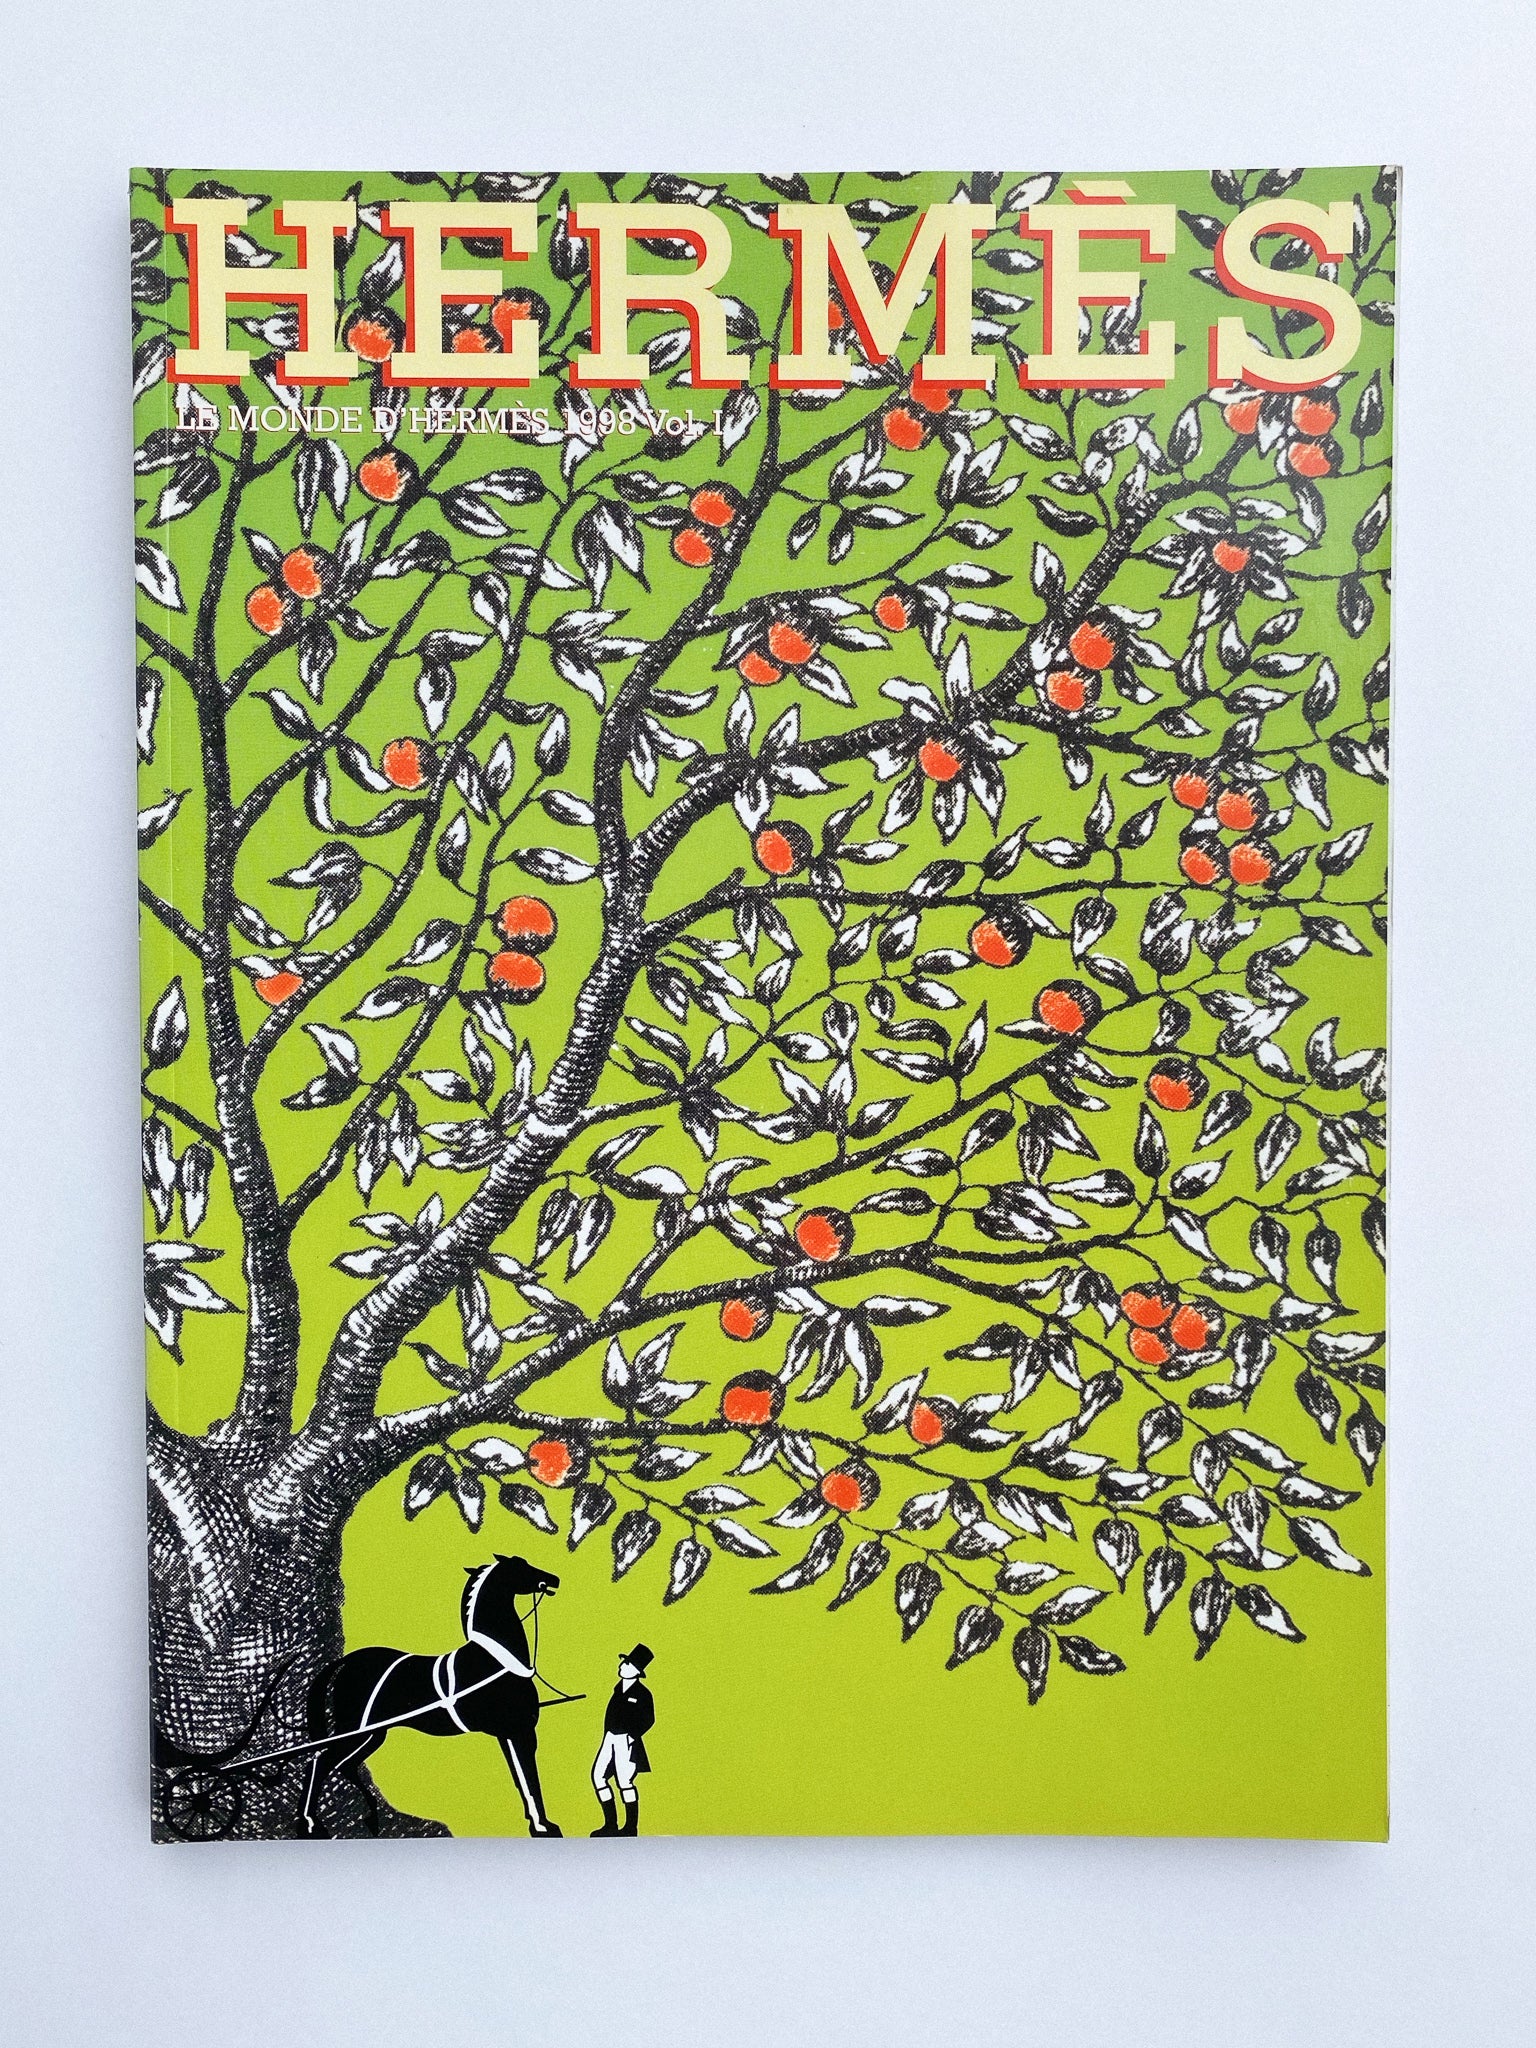 Le Monde d'Hermès N° 32, 1998 Vol. I